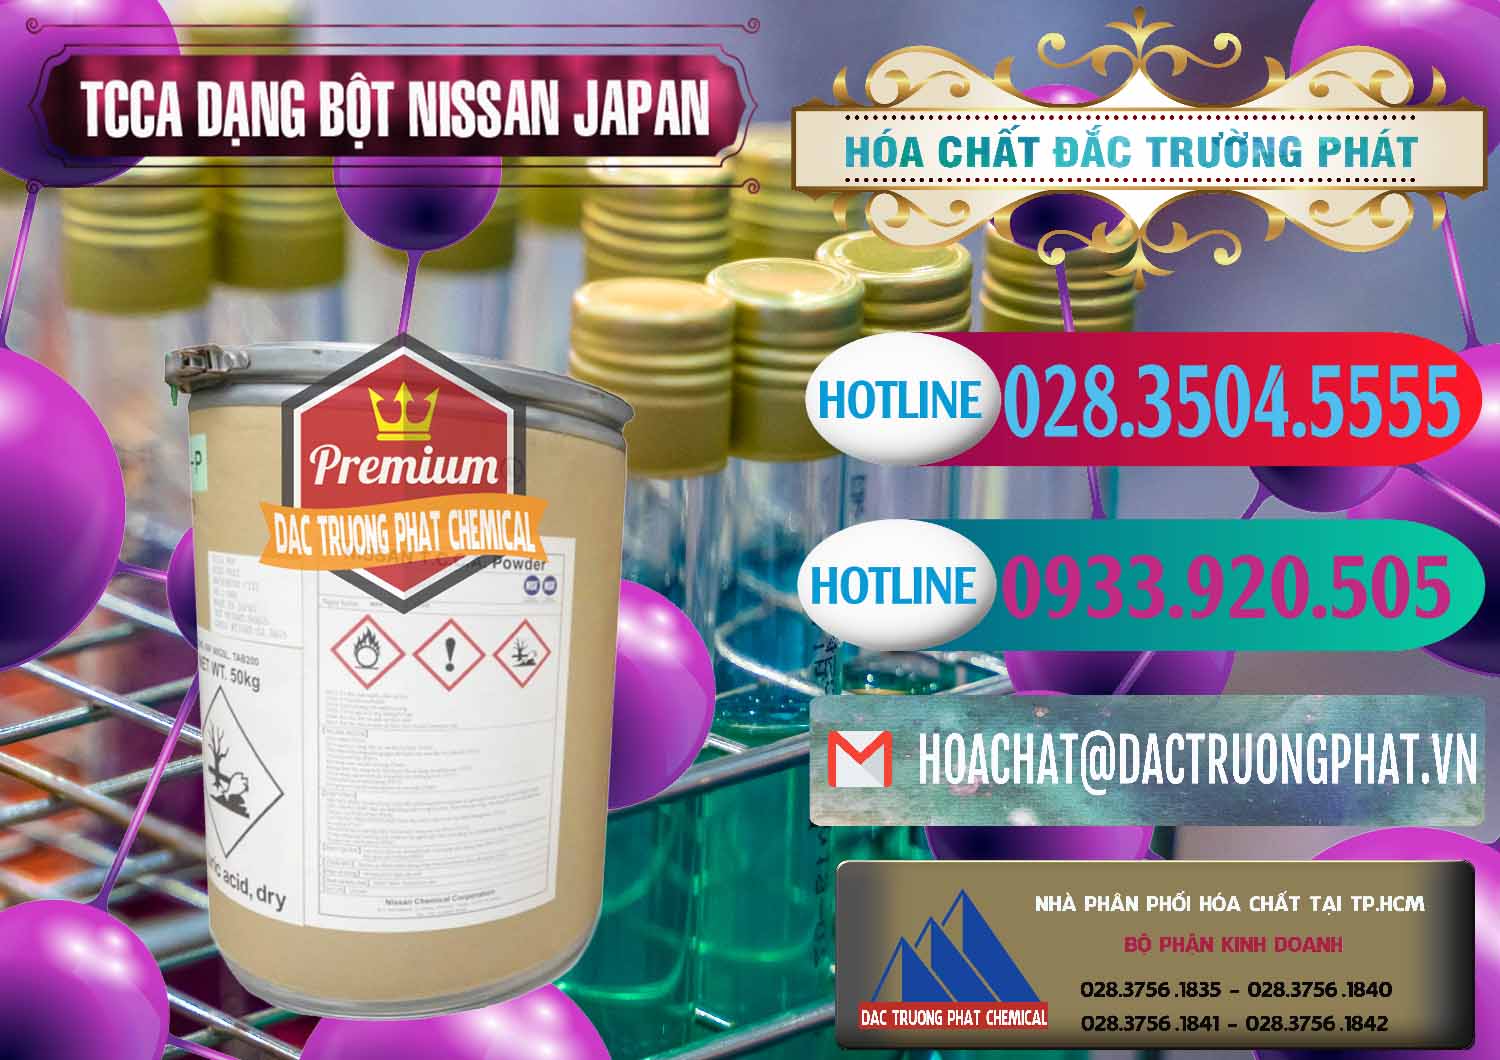 Chuyên phân phối - bán TCCA - Acid Trichloroisocyanuric 90% Dạng Bột Nissan Nhật Bản Japan - 0375 - Đơn vị chuyên kinh doanh _ phân phối hóa chất tại TP.HCM - truongphat.vn